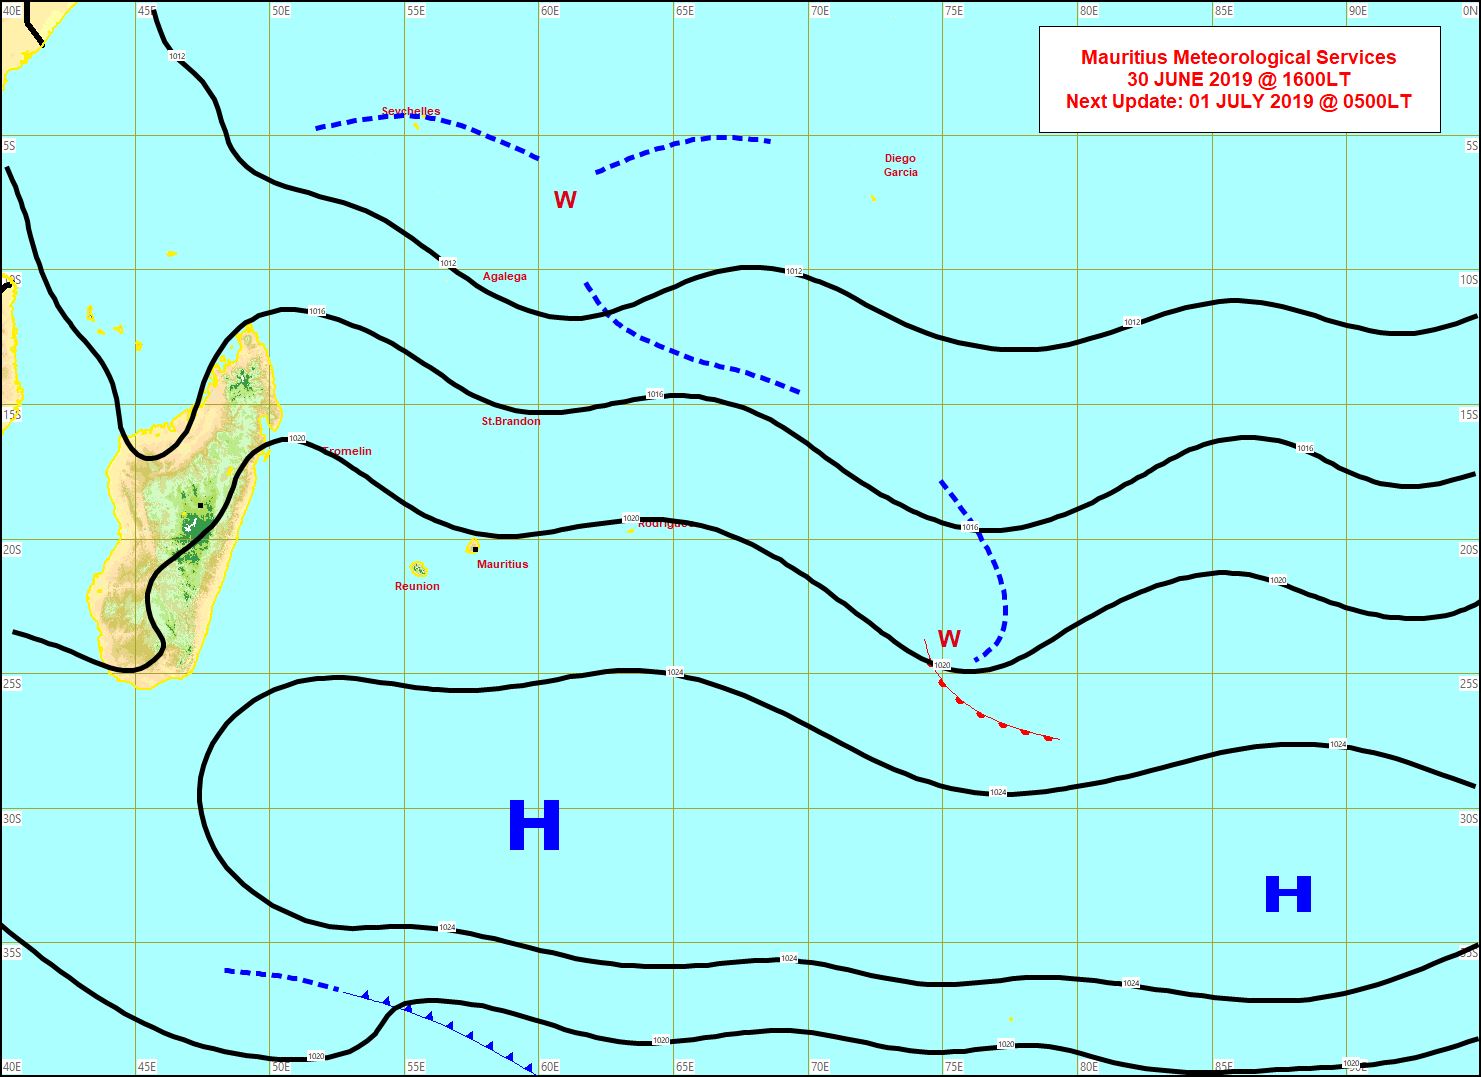 Analyse de la situation de surface cet après midi. L'alizé commencera à faiblir de manière significative Mercredi avec le retrait des hautes pressions(H). MMS